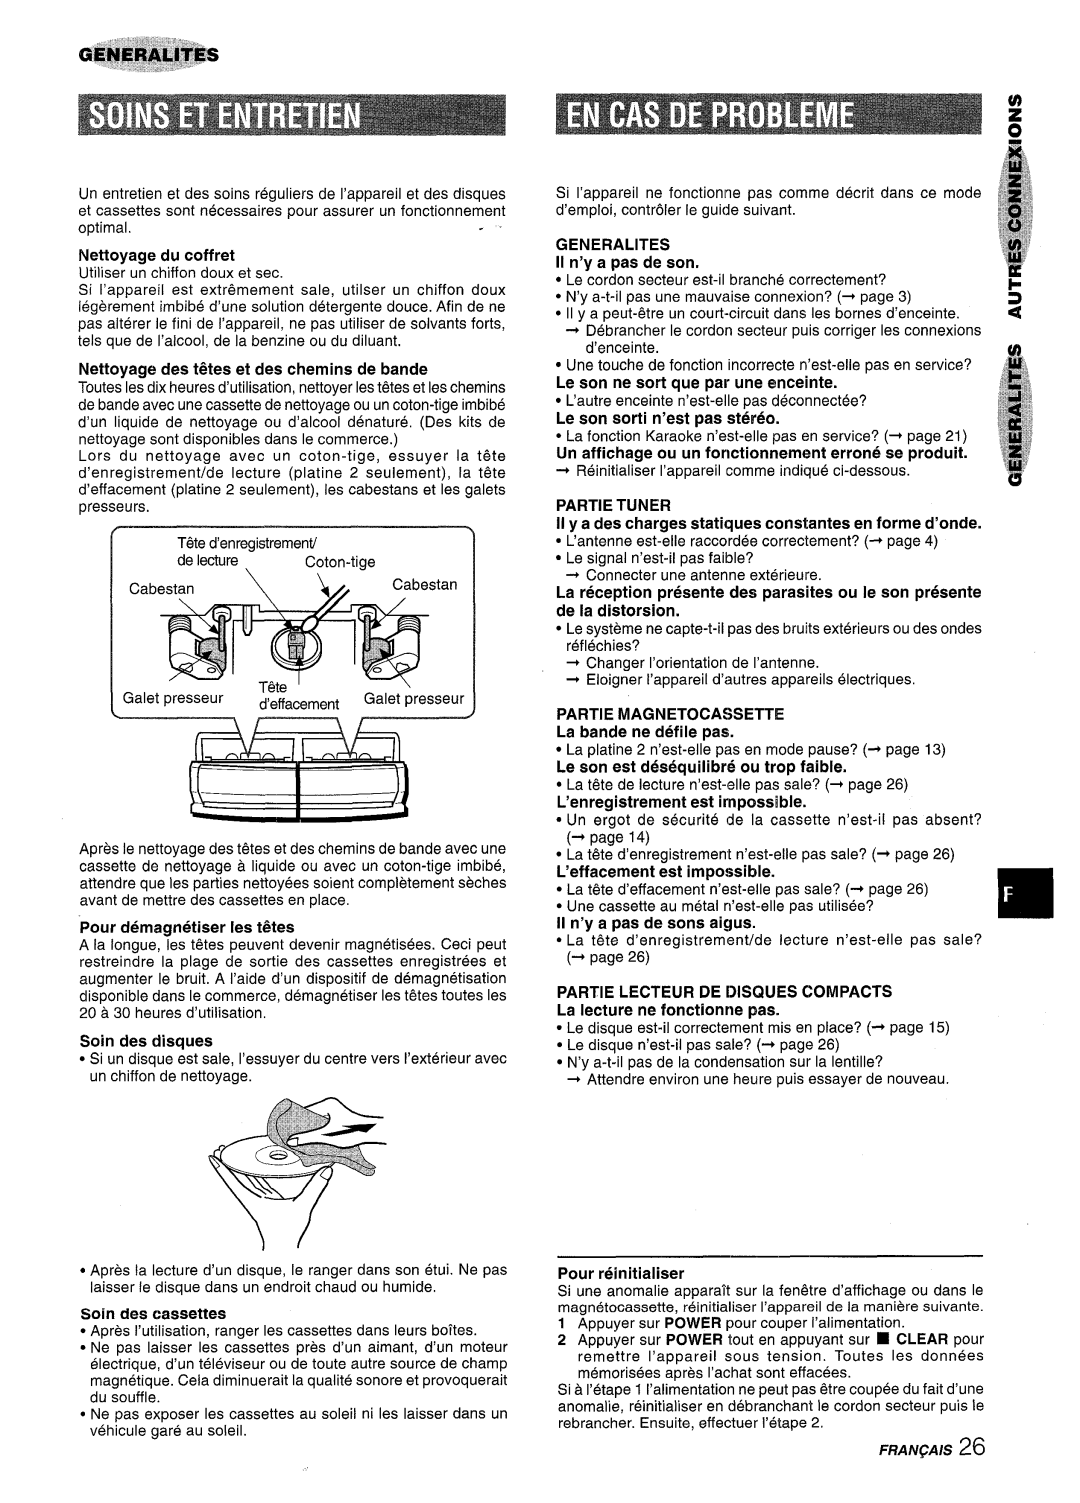 Sony NSX-A707 Nettoyage des t&es et des chemins de bande, Le son ne sort que par une enceinte, Partie Tuner, f,j ii ~ 